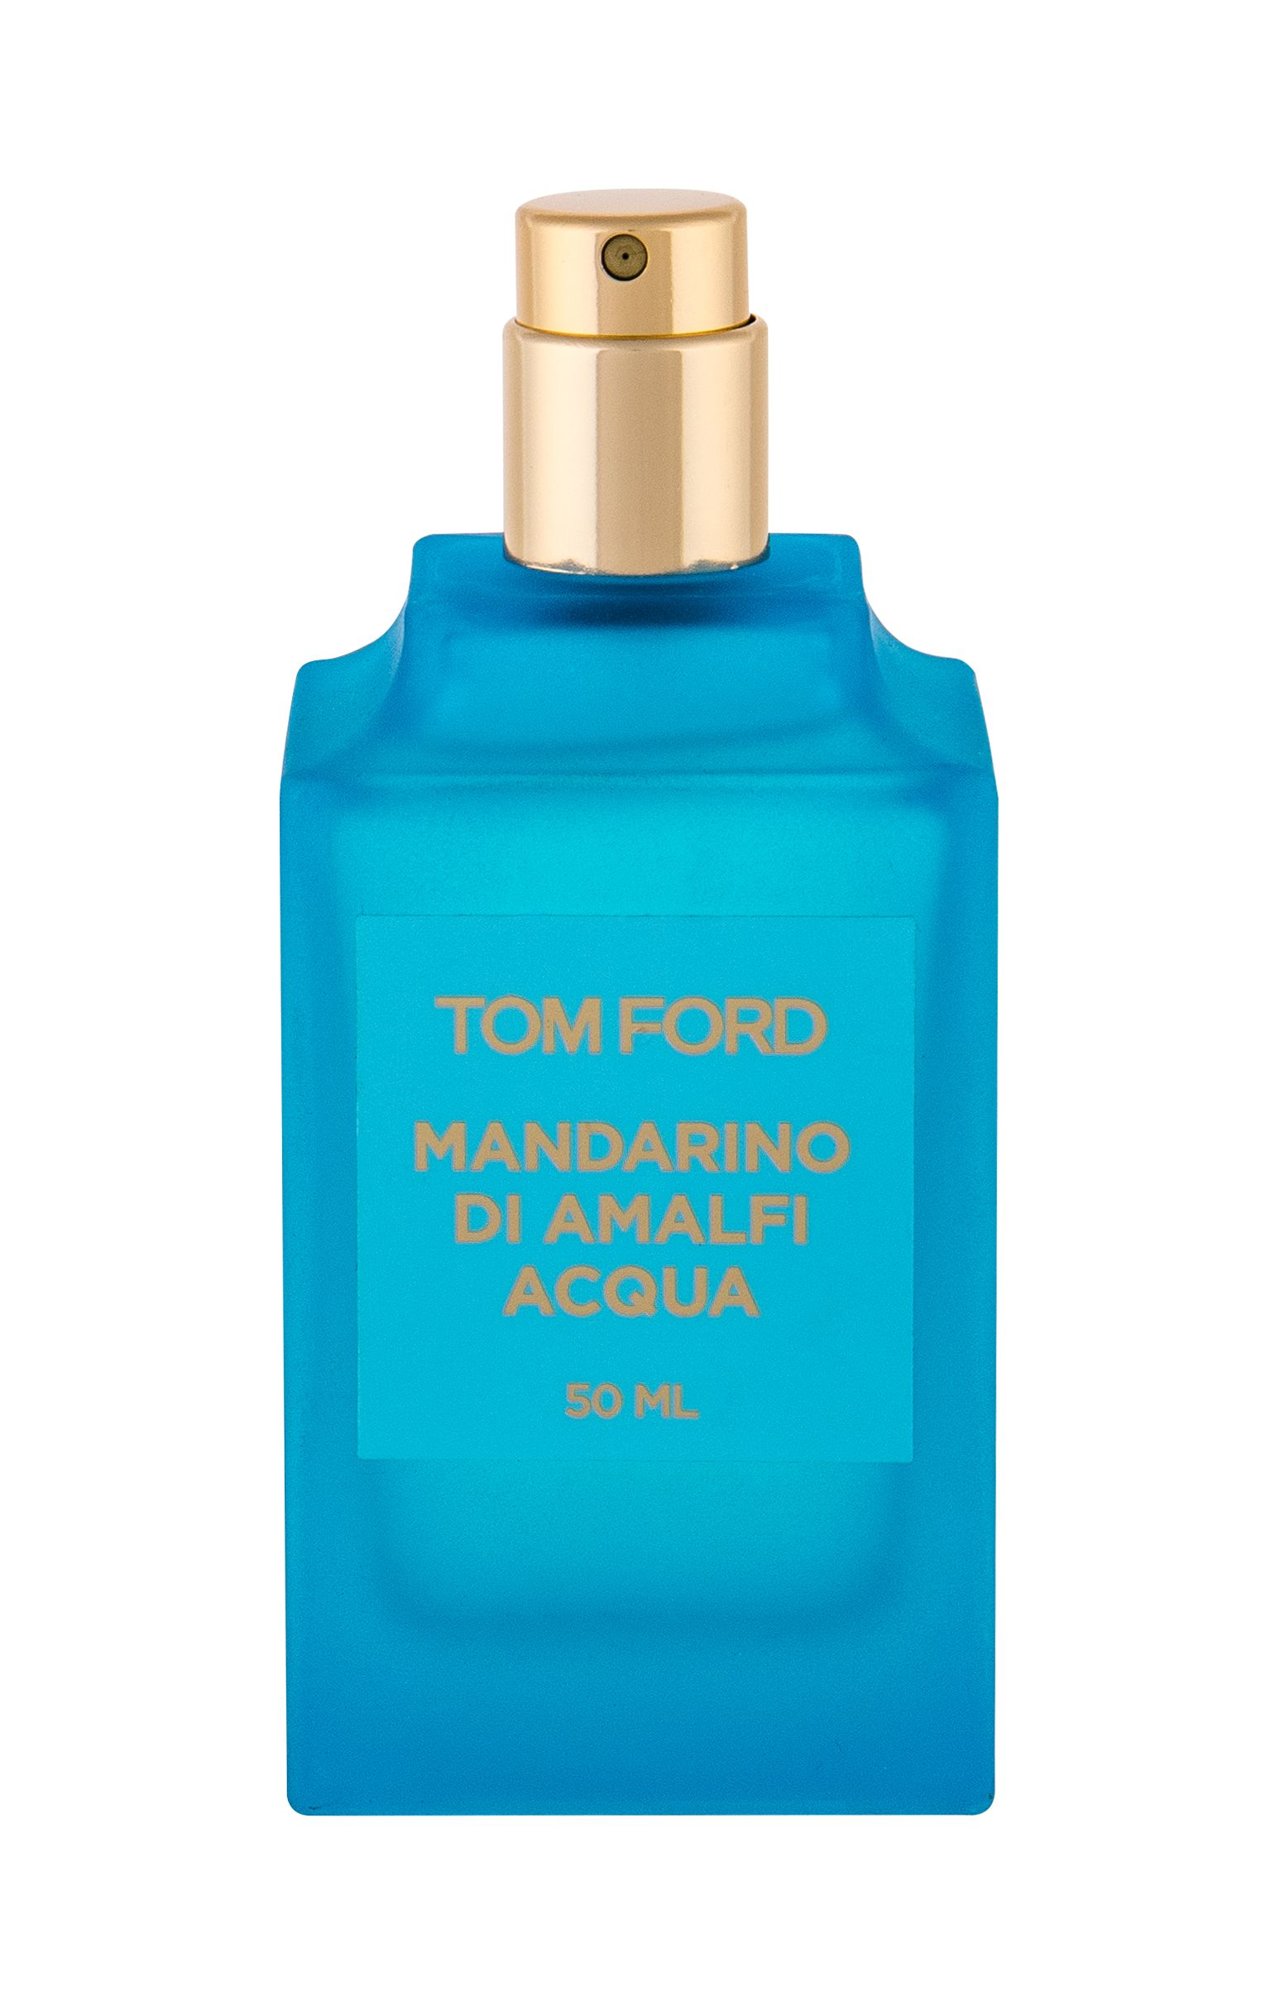 Tom Ford Mandarino di Amalfi Acqua 50ml NIŠINIAI Kvepalai Unisex EDT Testeris